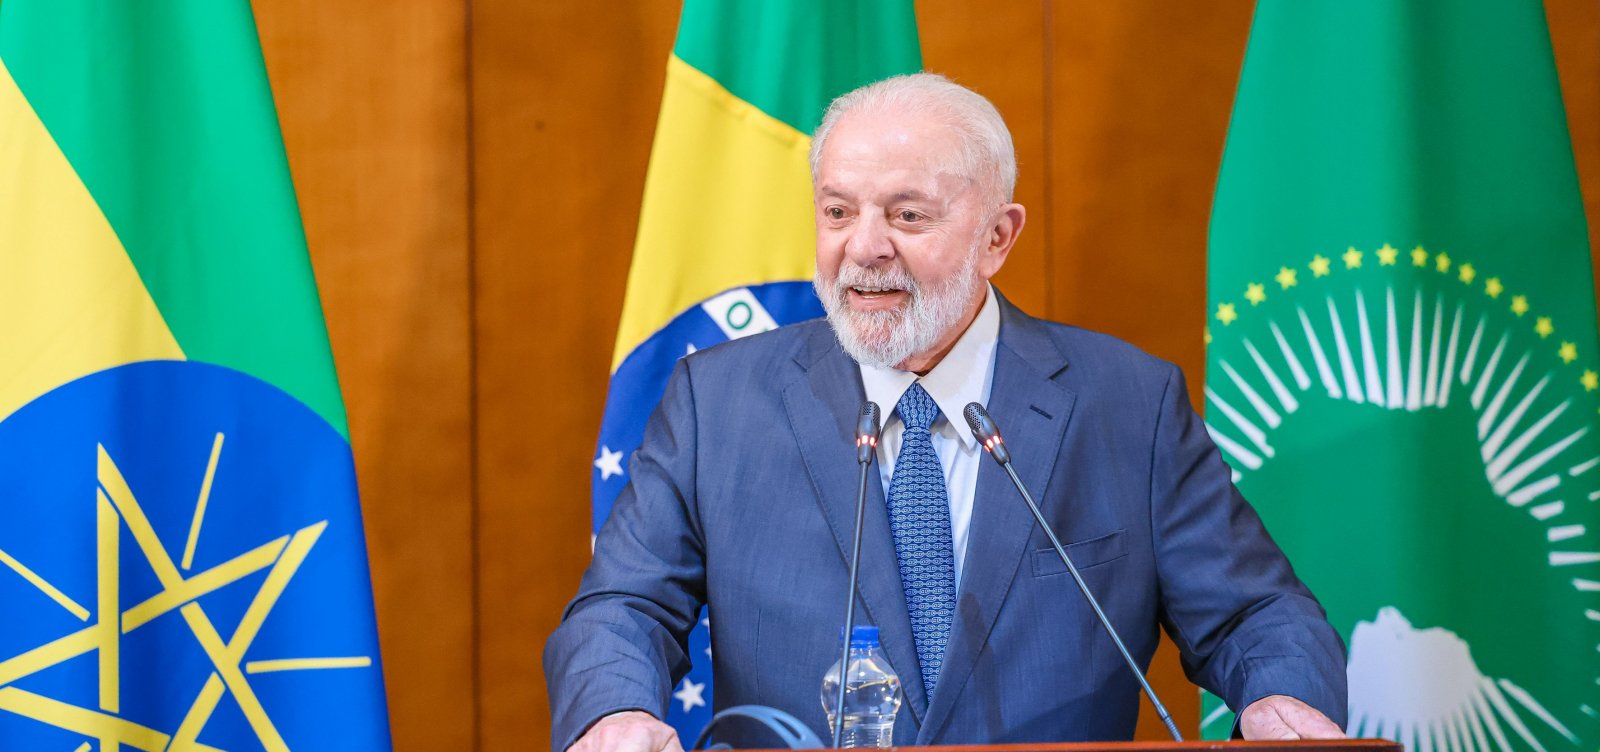 Com 113 assinaturas pedido de impeachment de Lula não deve ser aprovado pela Câmara 